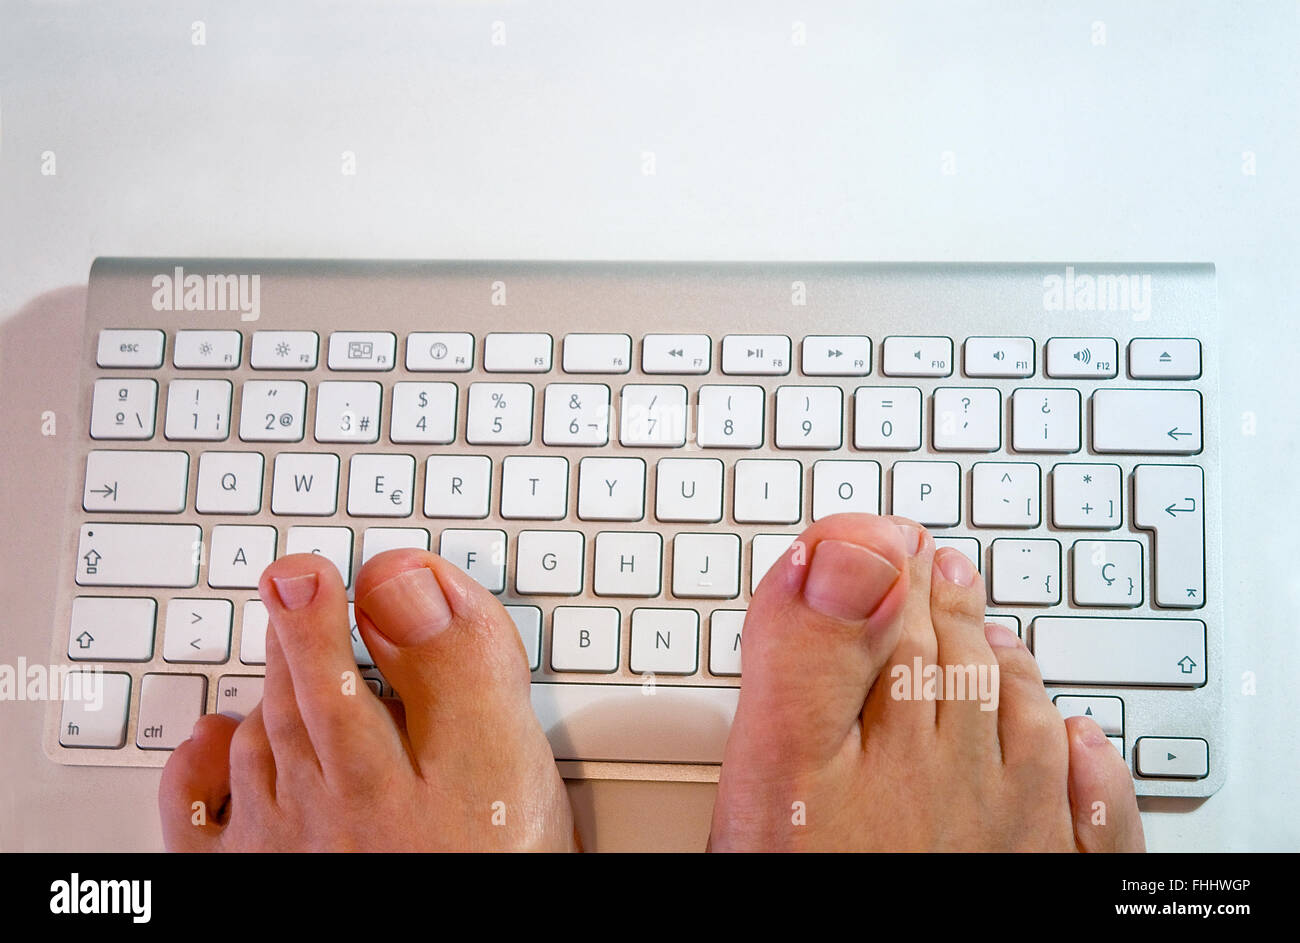 Man's feet typing keyboard. Stock Photo